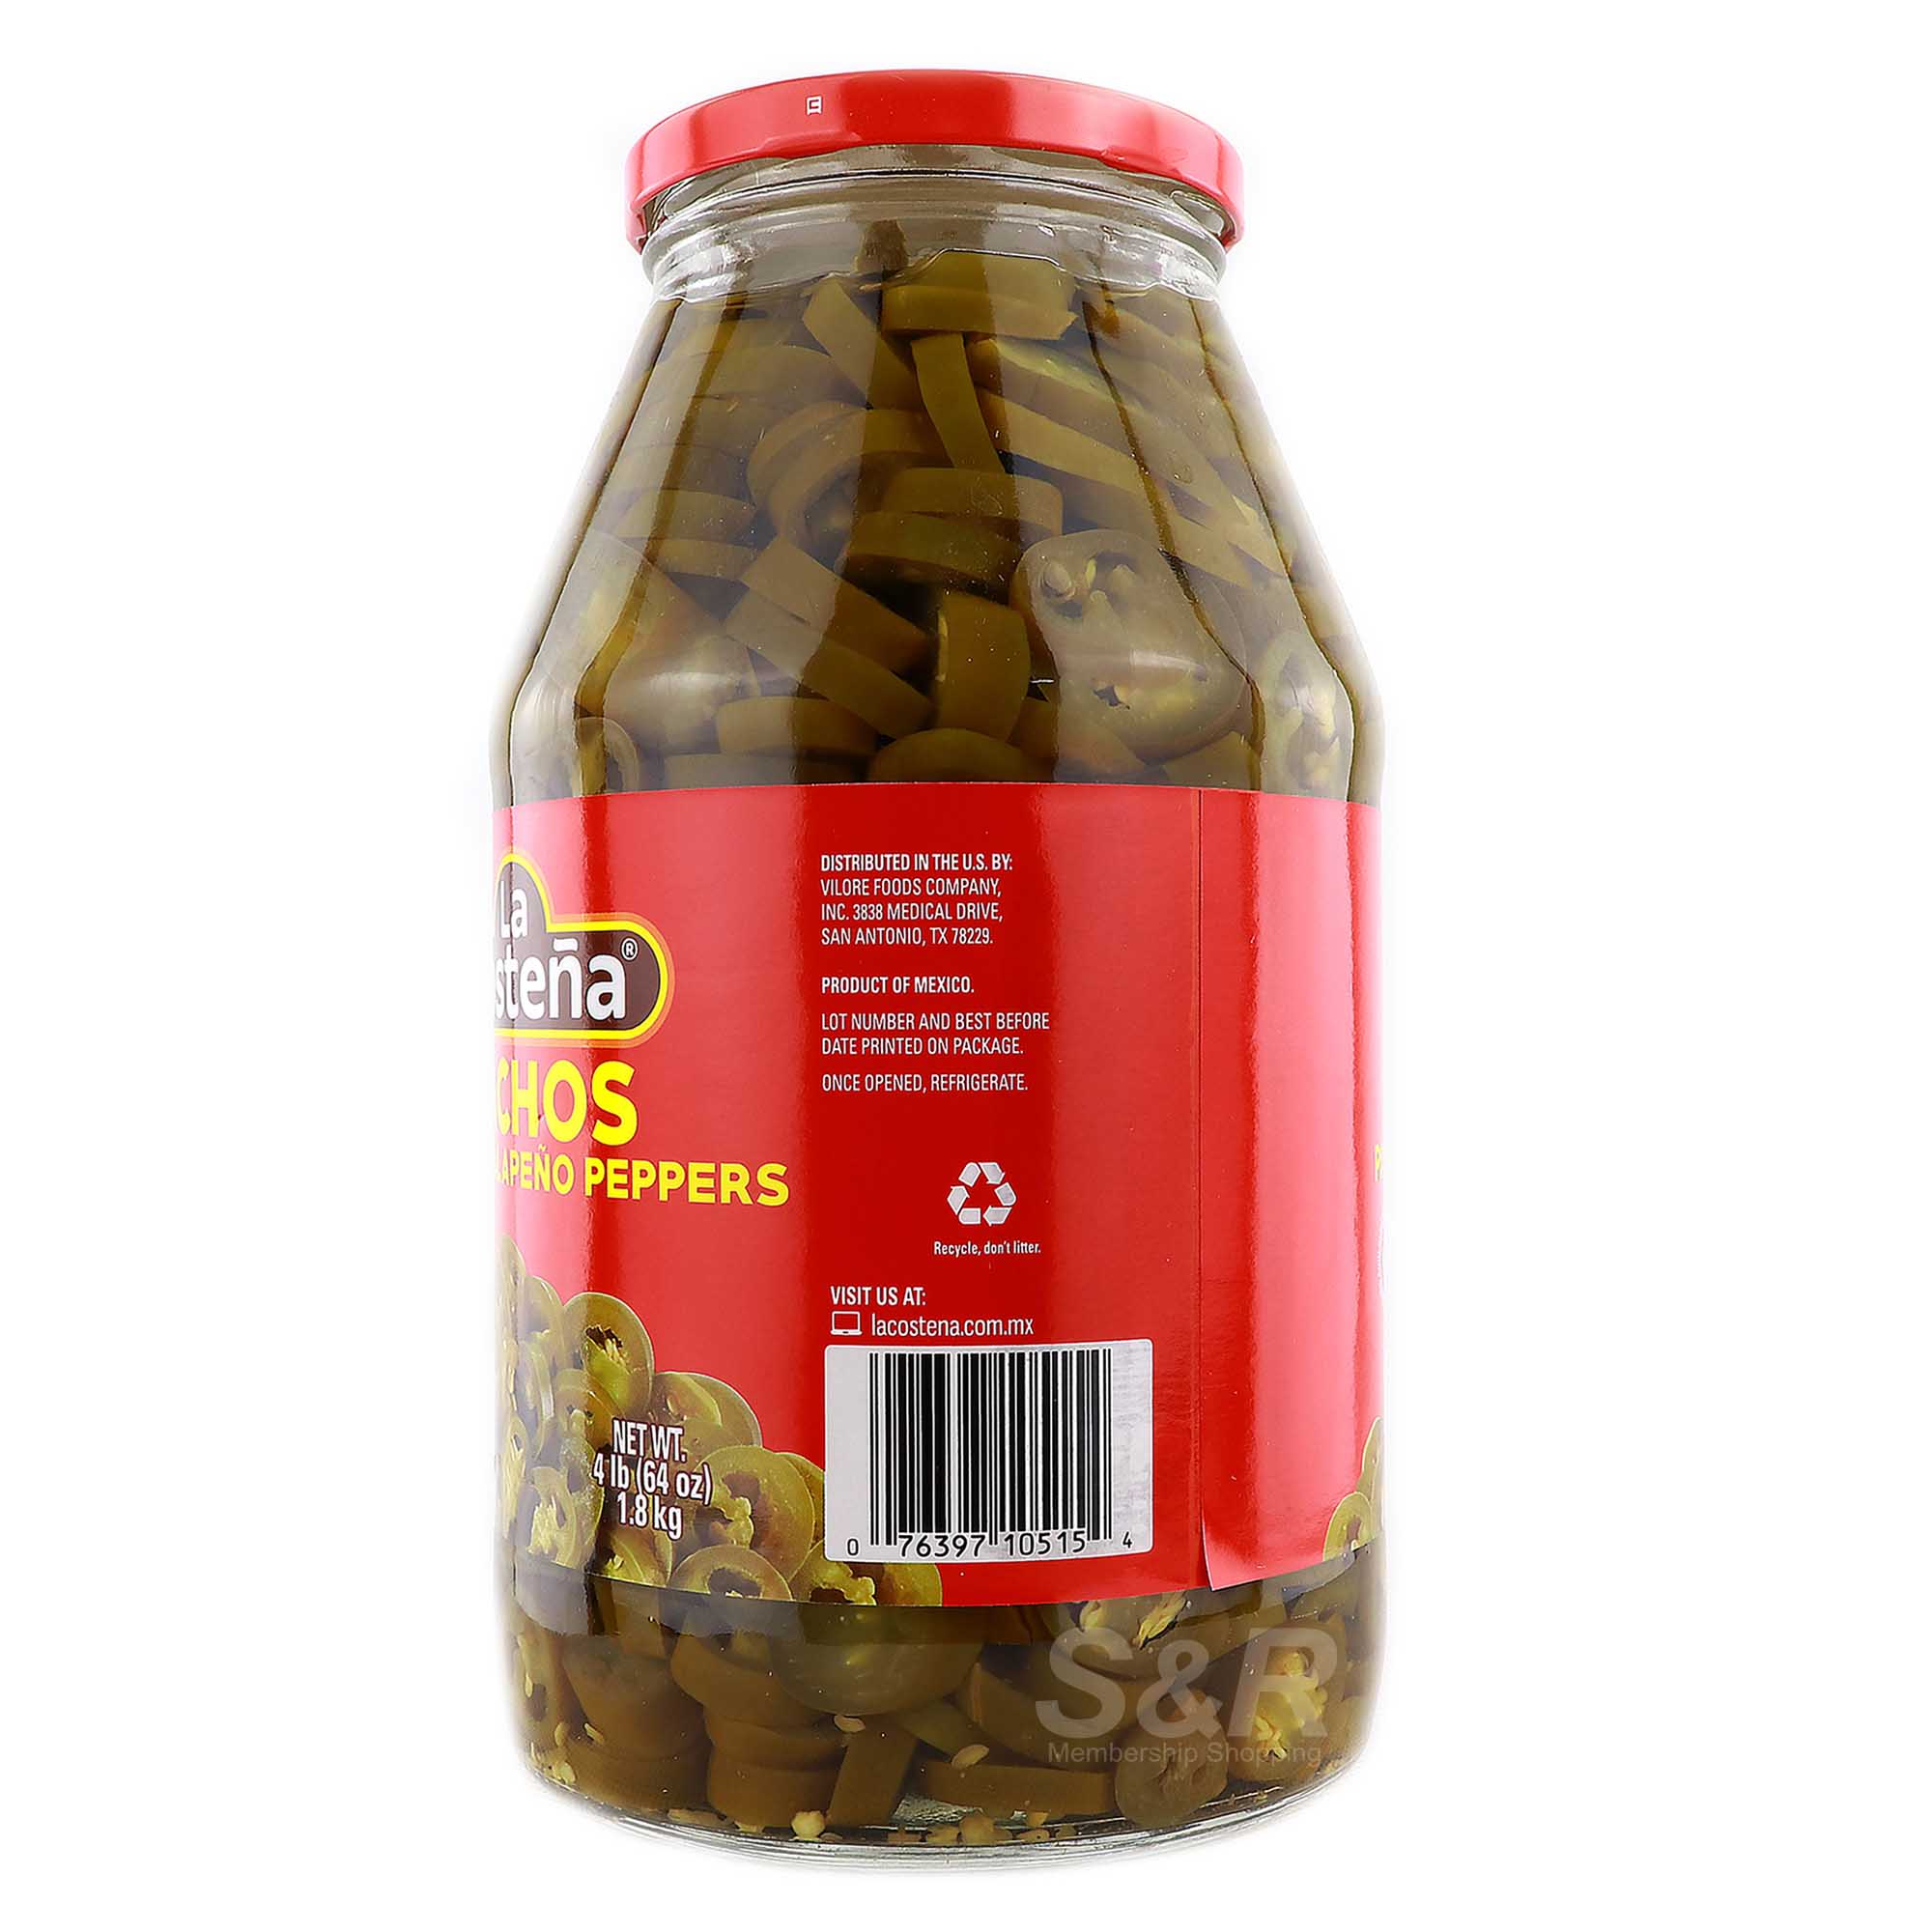 Pickled Jalapeno